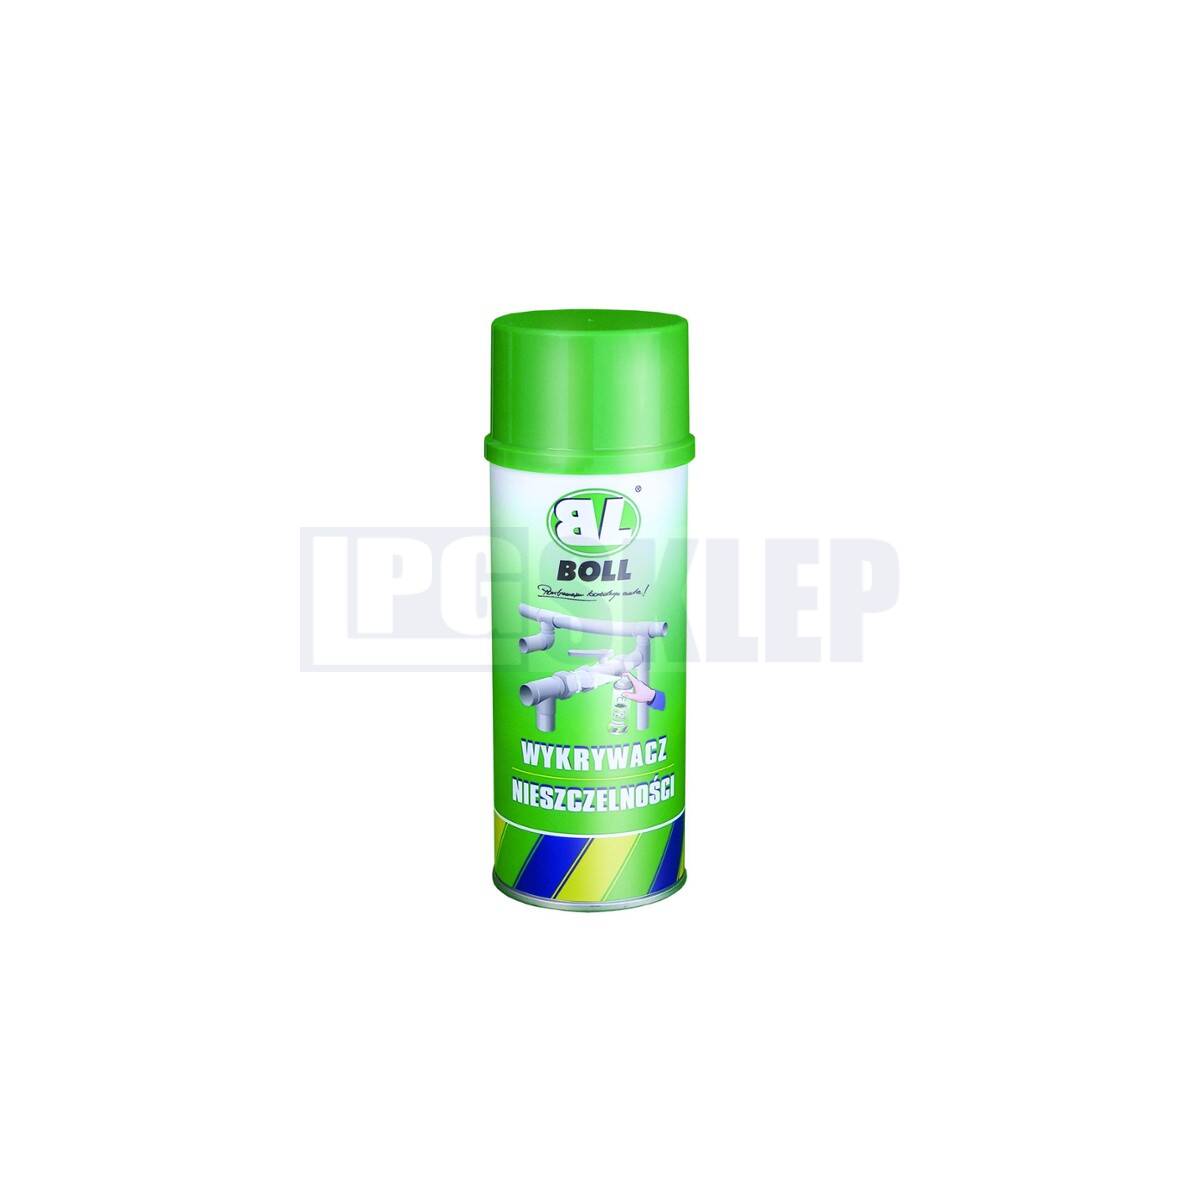 BOLL tester szczelności - spray 300 ml (Zdjęcie 1)